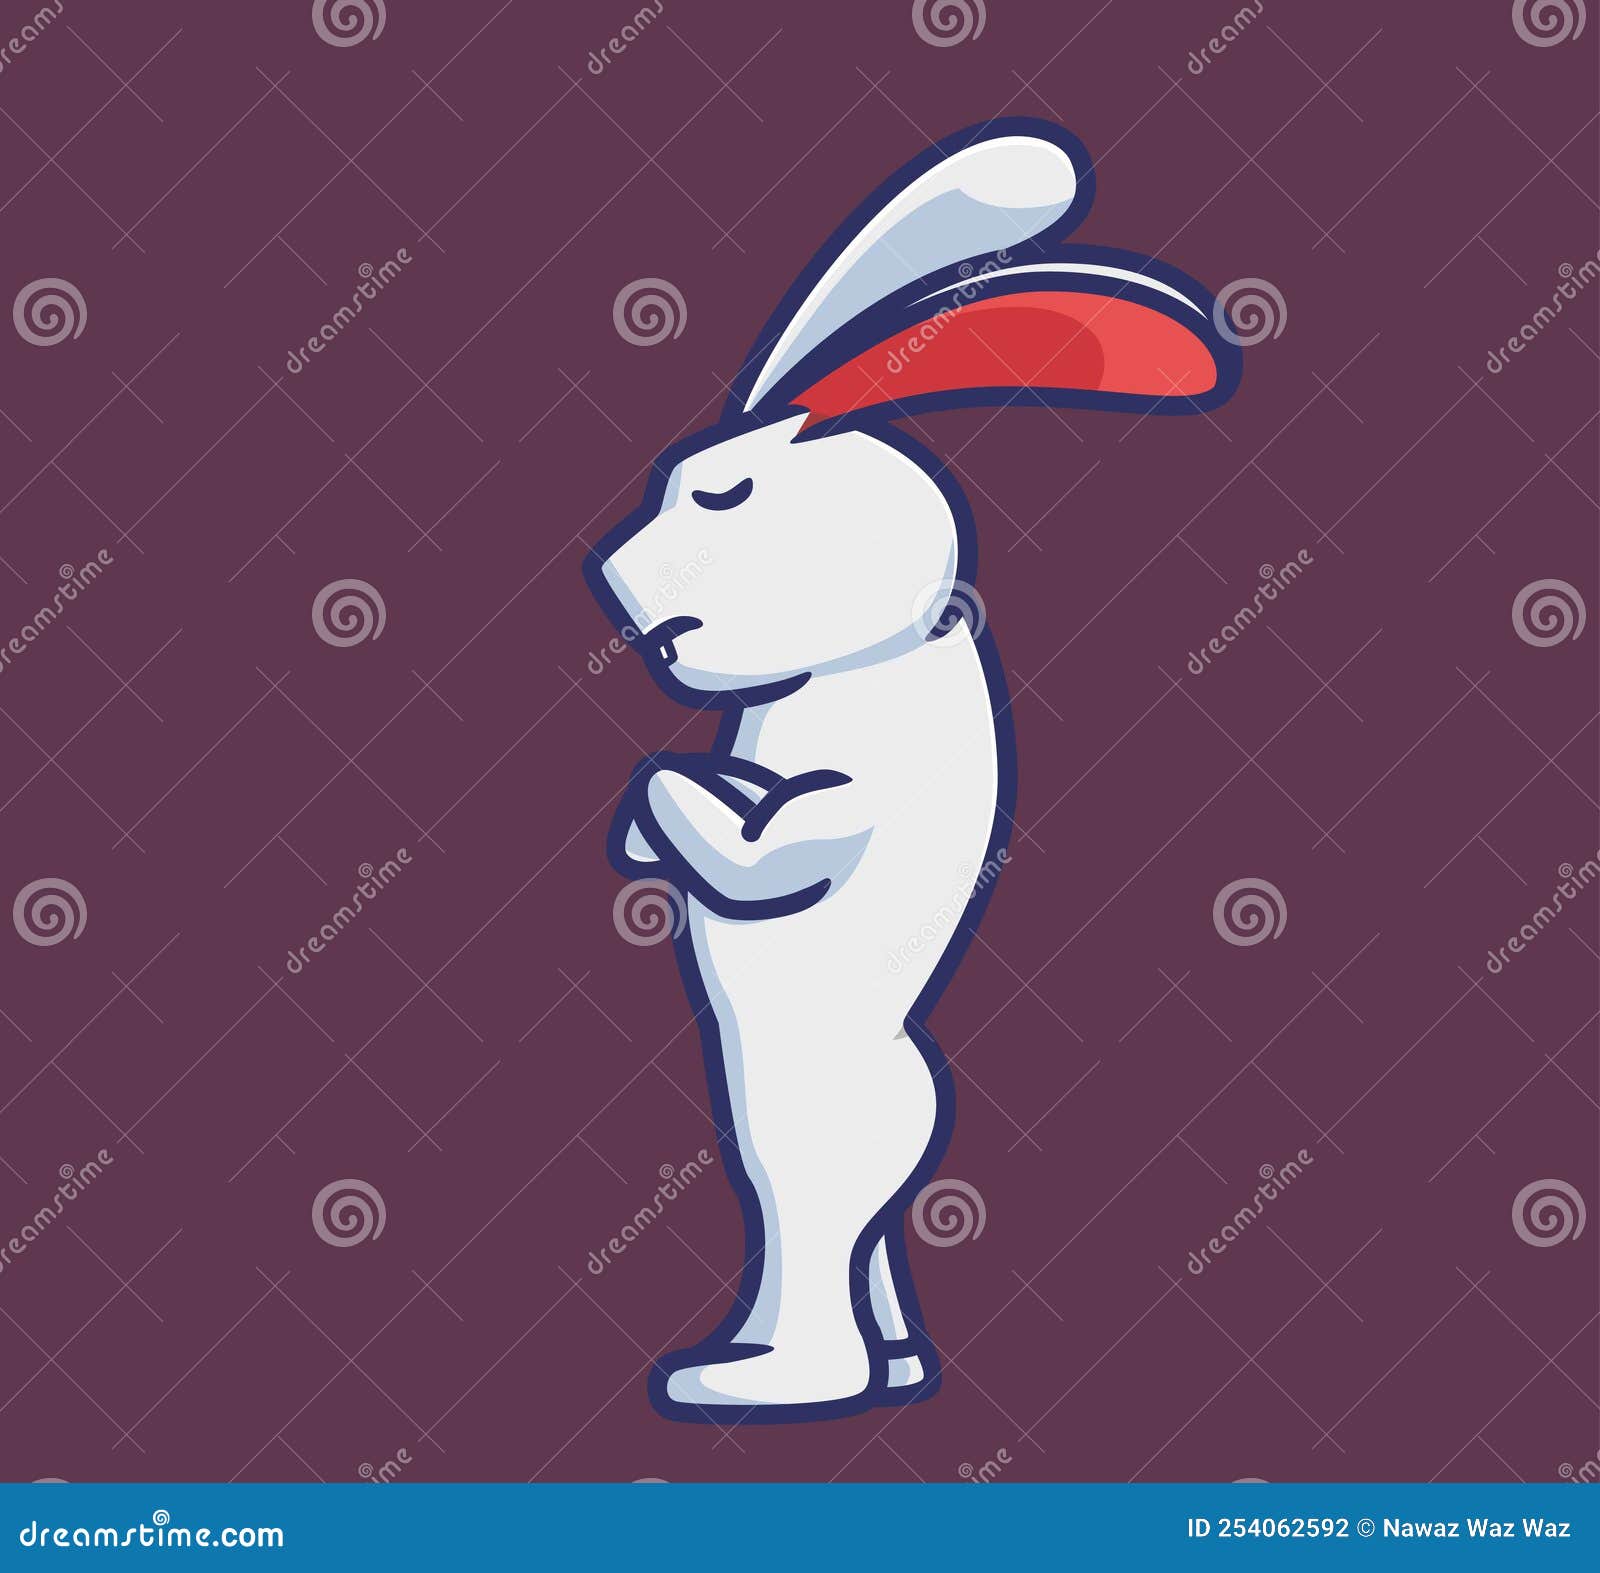 Premium Vector  Rabbit logo design